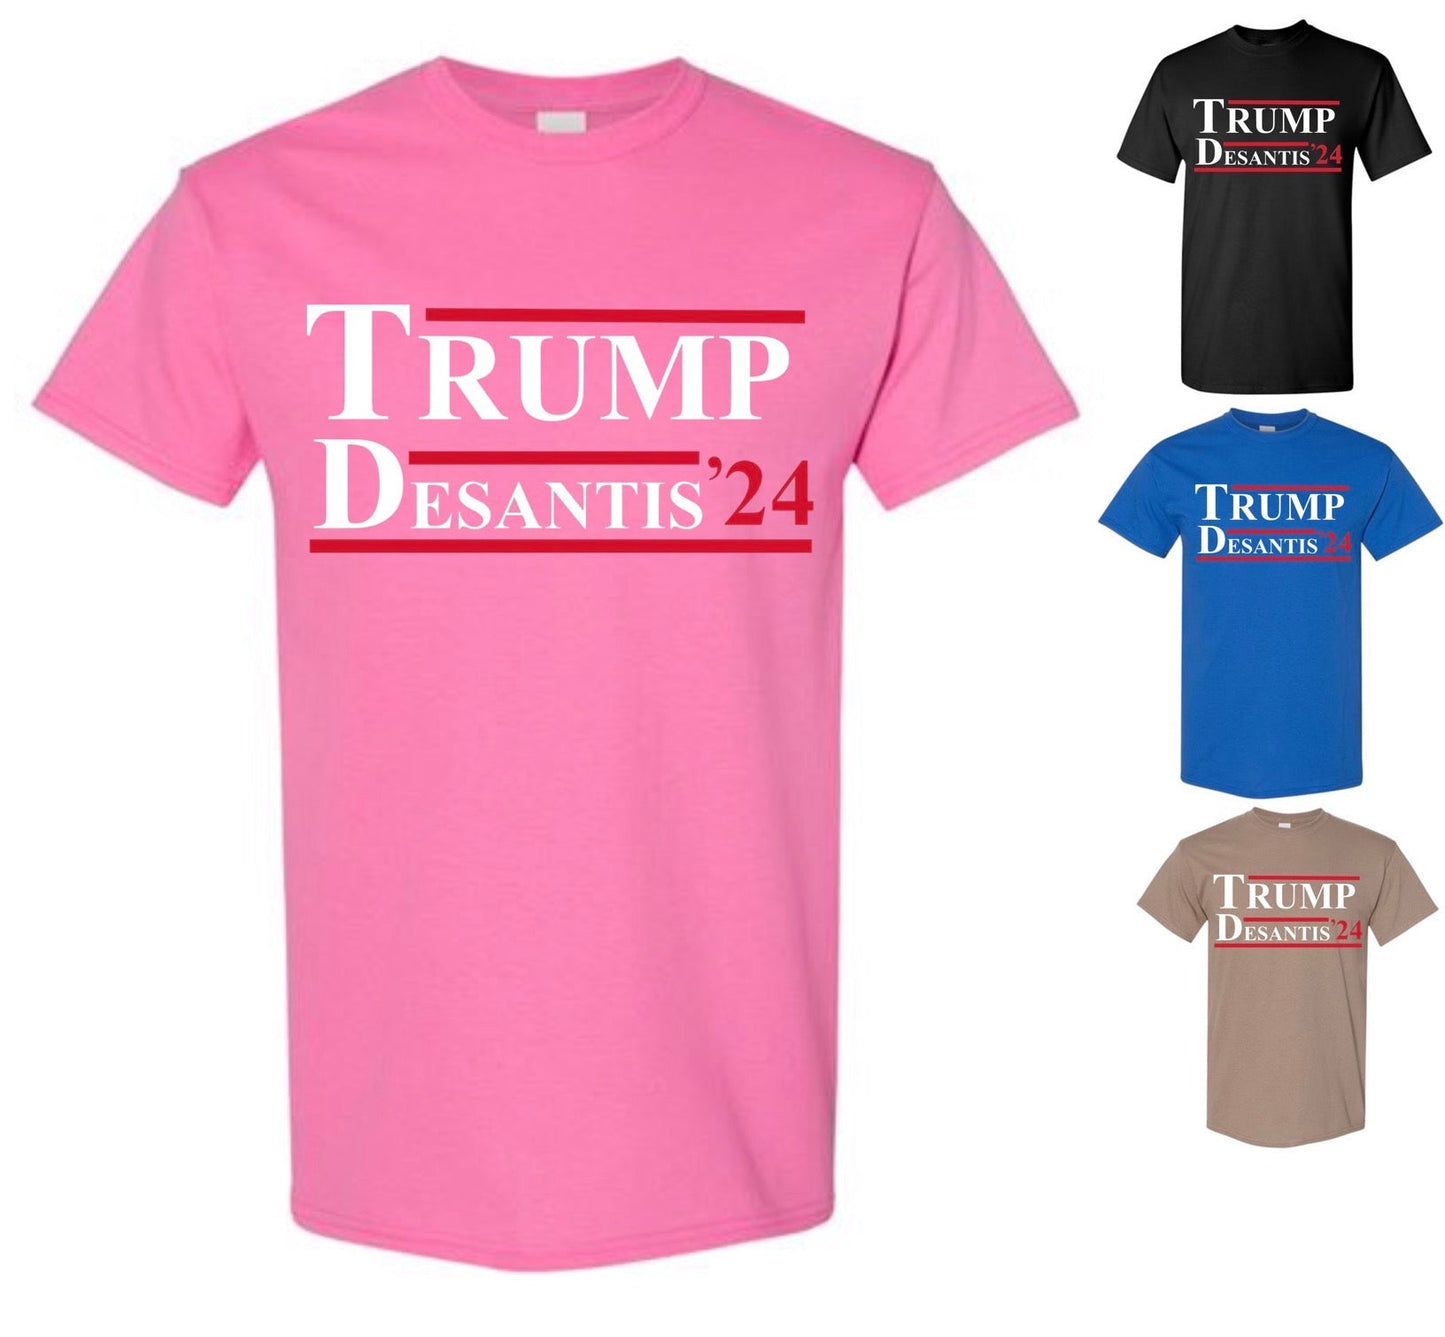 Trump DeSantis 2024 Shirt — Christmas Special